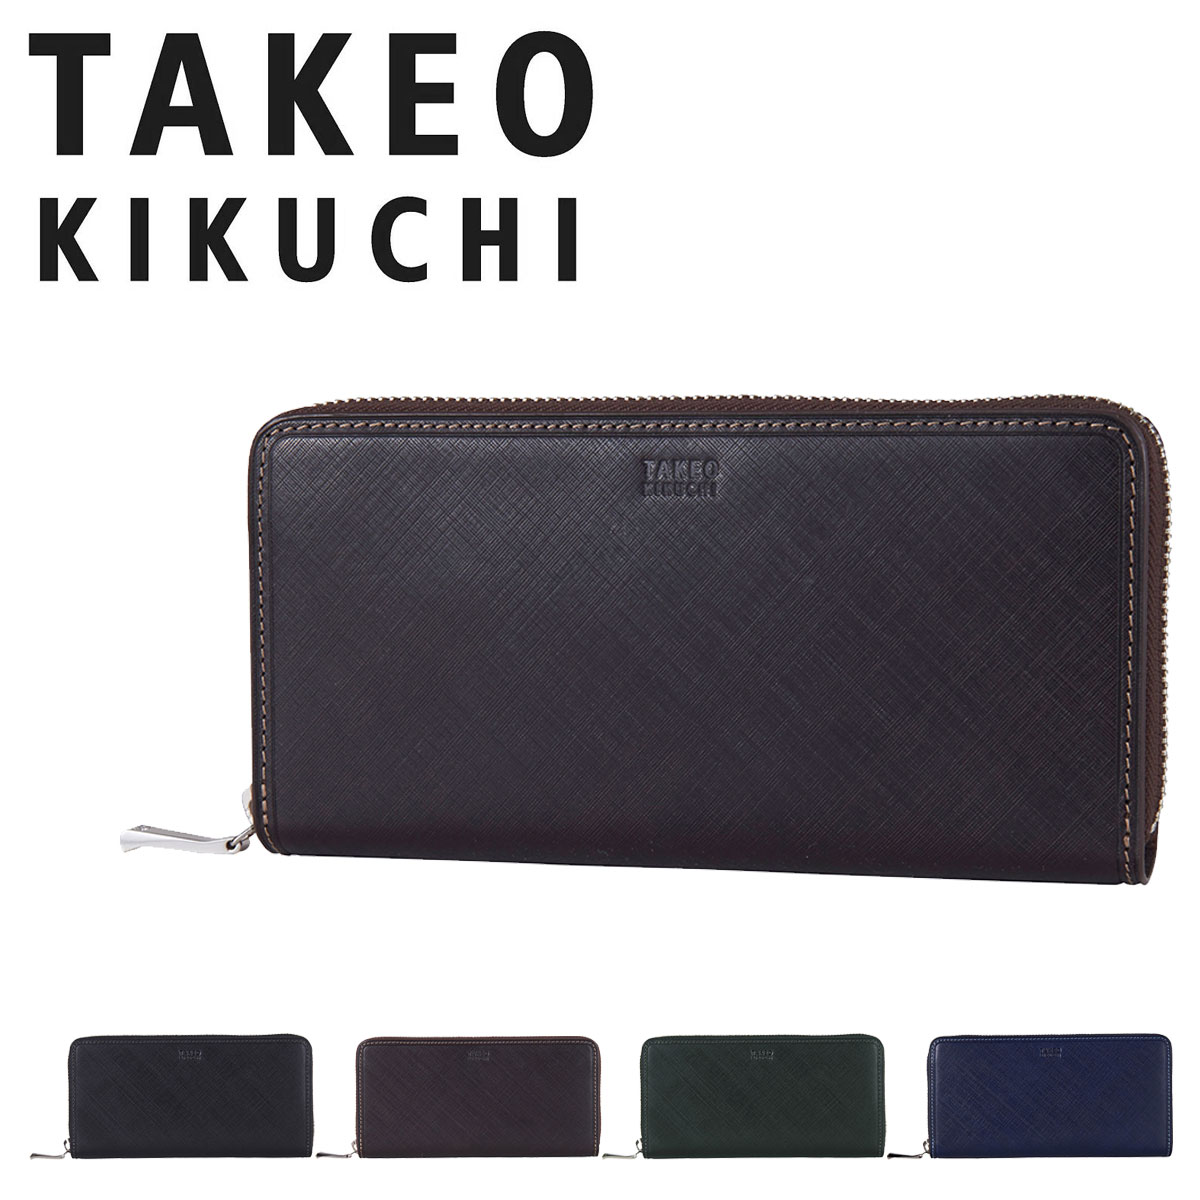 タケオキクチ 長財布 ラウンドファスナー 本革 メンズ シグマ 727628 TAKEO KIKUCHI エンボスレザー DL10